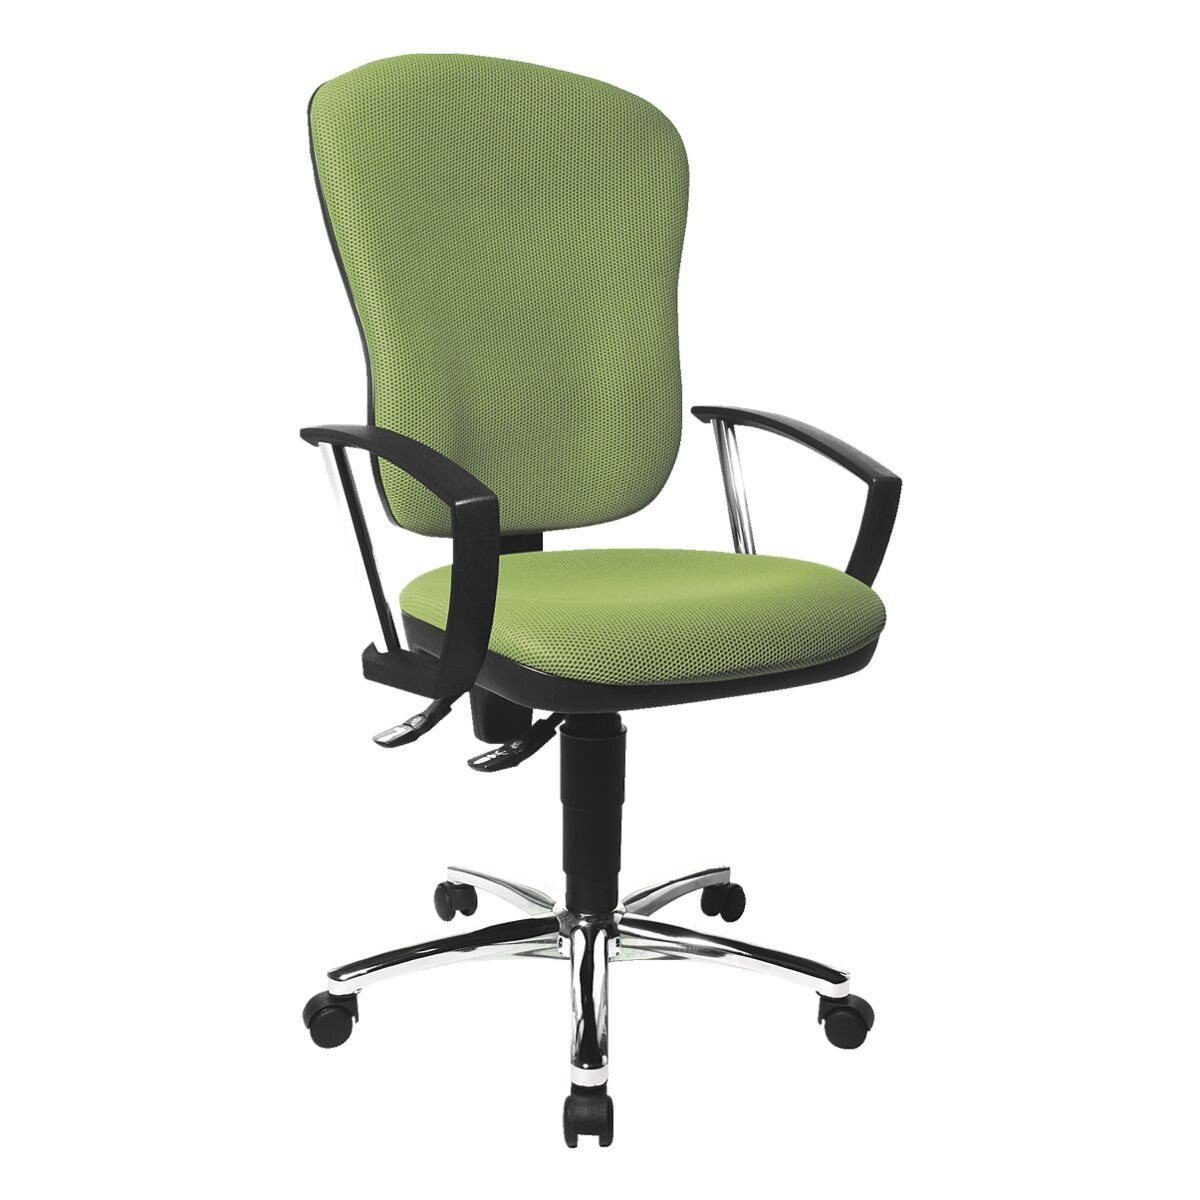 mit Point Steel 80, Lehne, Schreibtischstuhl (ohne Beckenstütze Armlehnen) grün konturgeformter / Muldensitz TOPSTAR